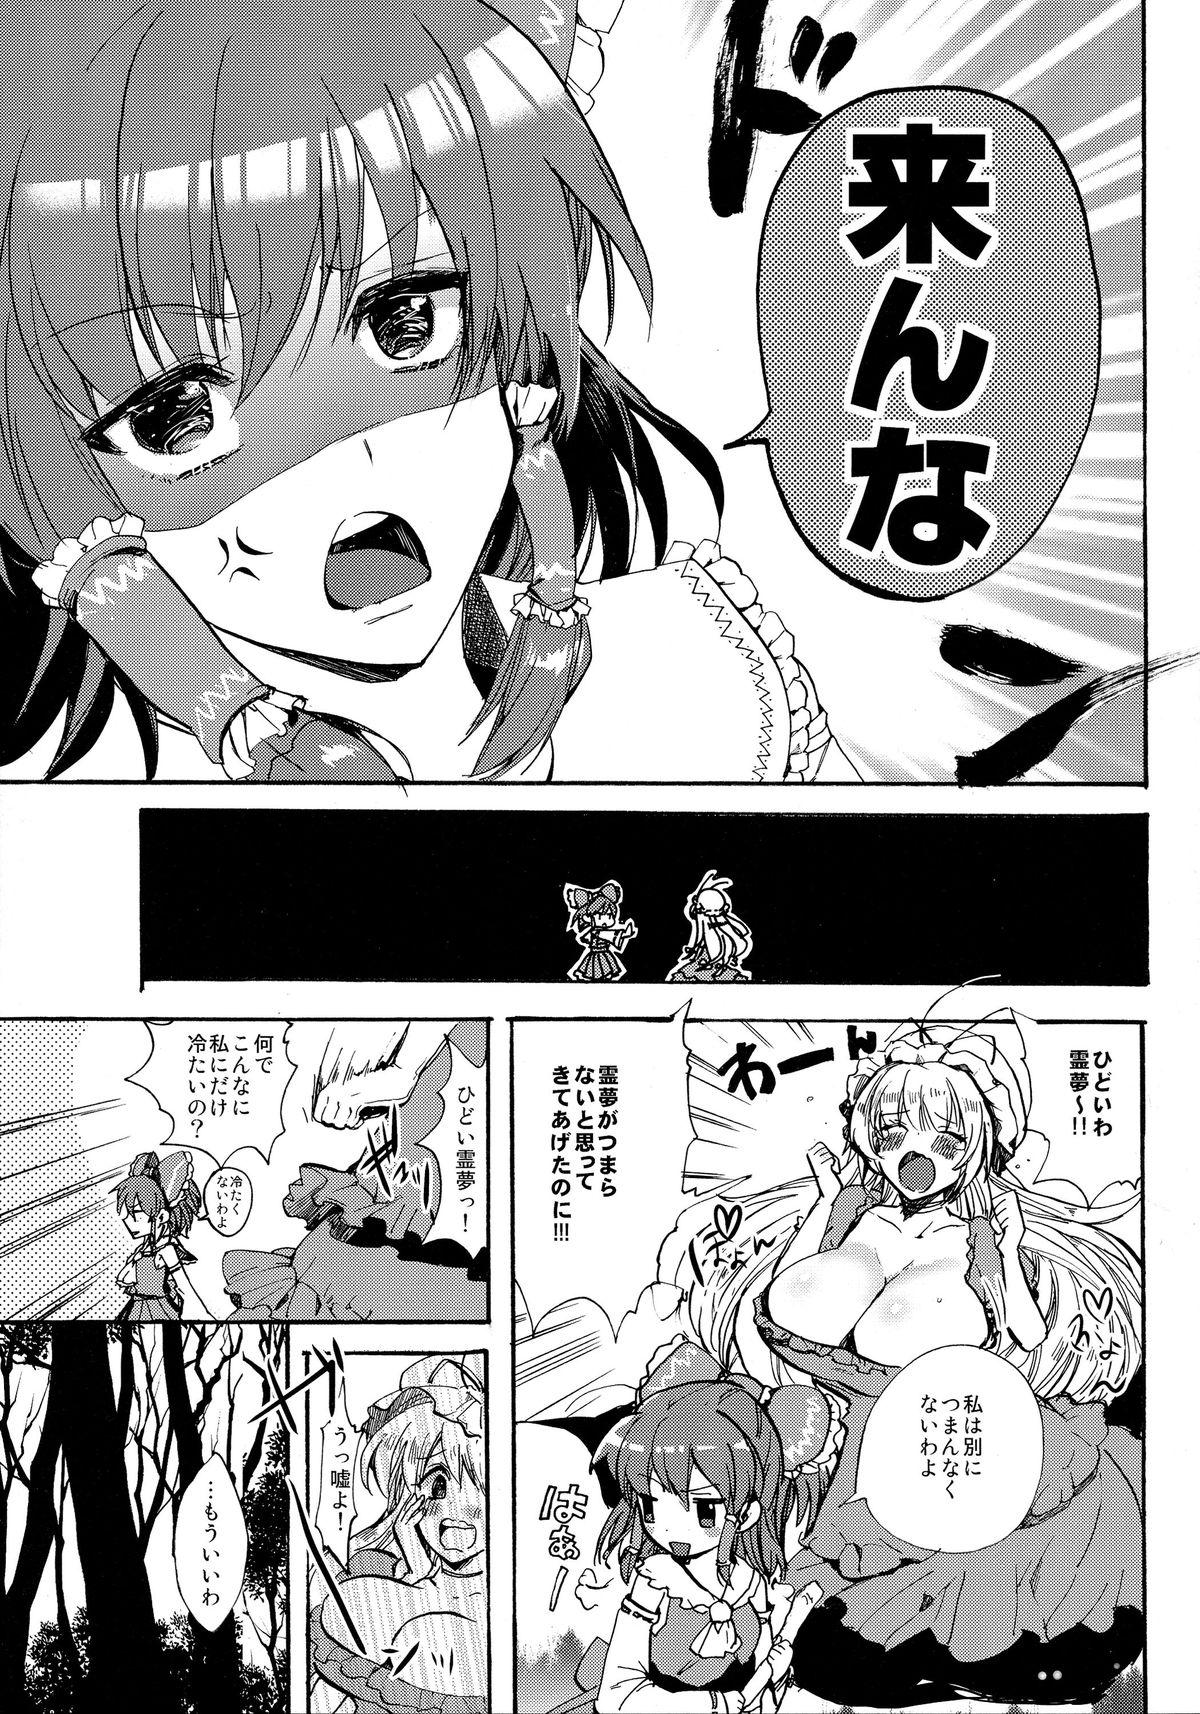 Titty Fuck Watashi no Reimu ga Konnani Tsumetai Hazu ga nai - Touhou project Oral Sex - Page 7